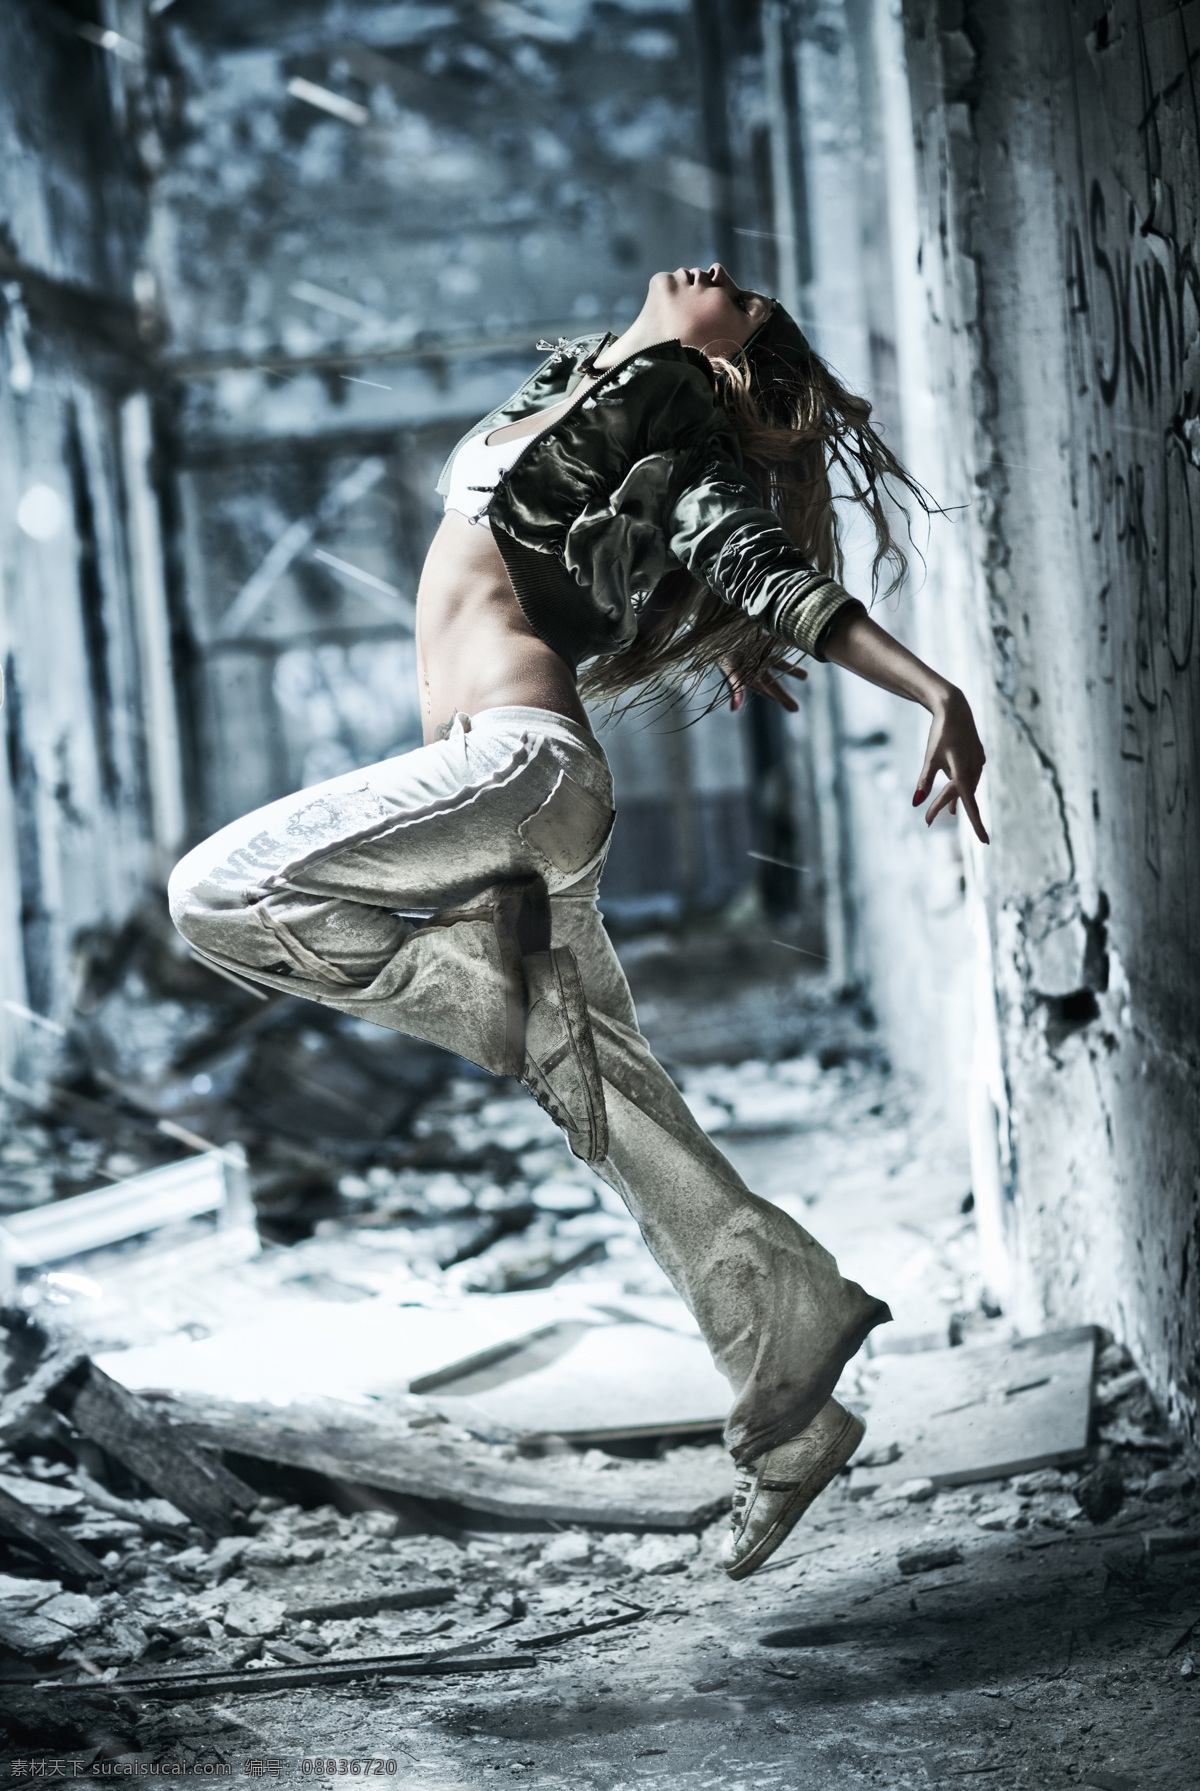 张瑛倩 南京艺术学院研究生 酷爱locking的街舞女孩 喜欢跳街舞 旅游